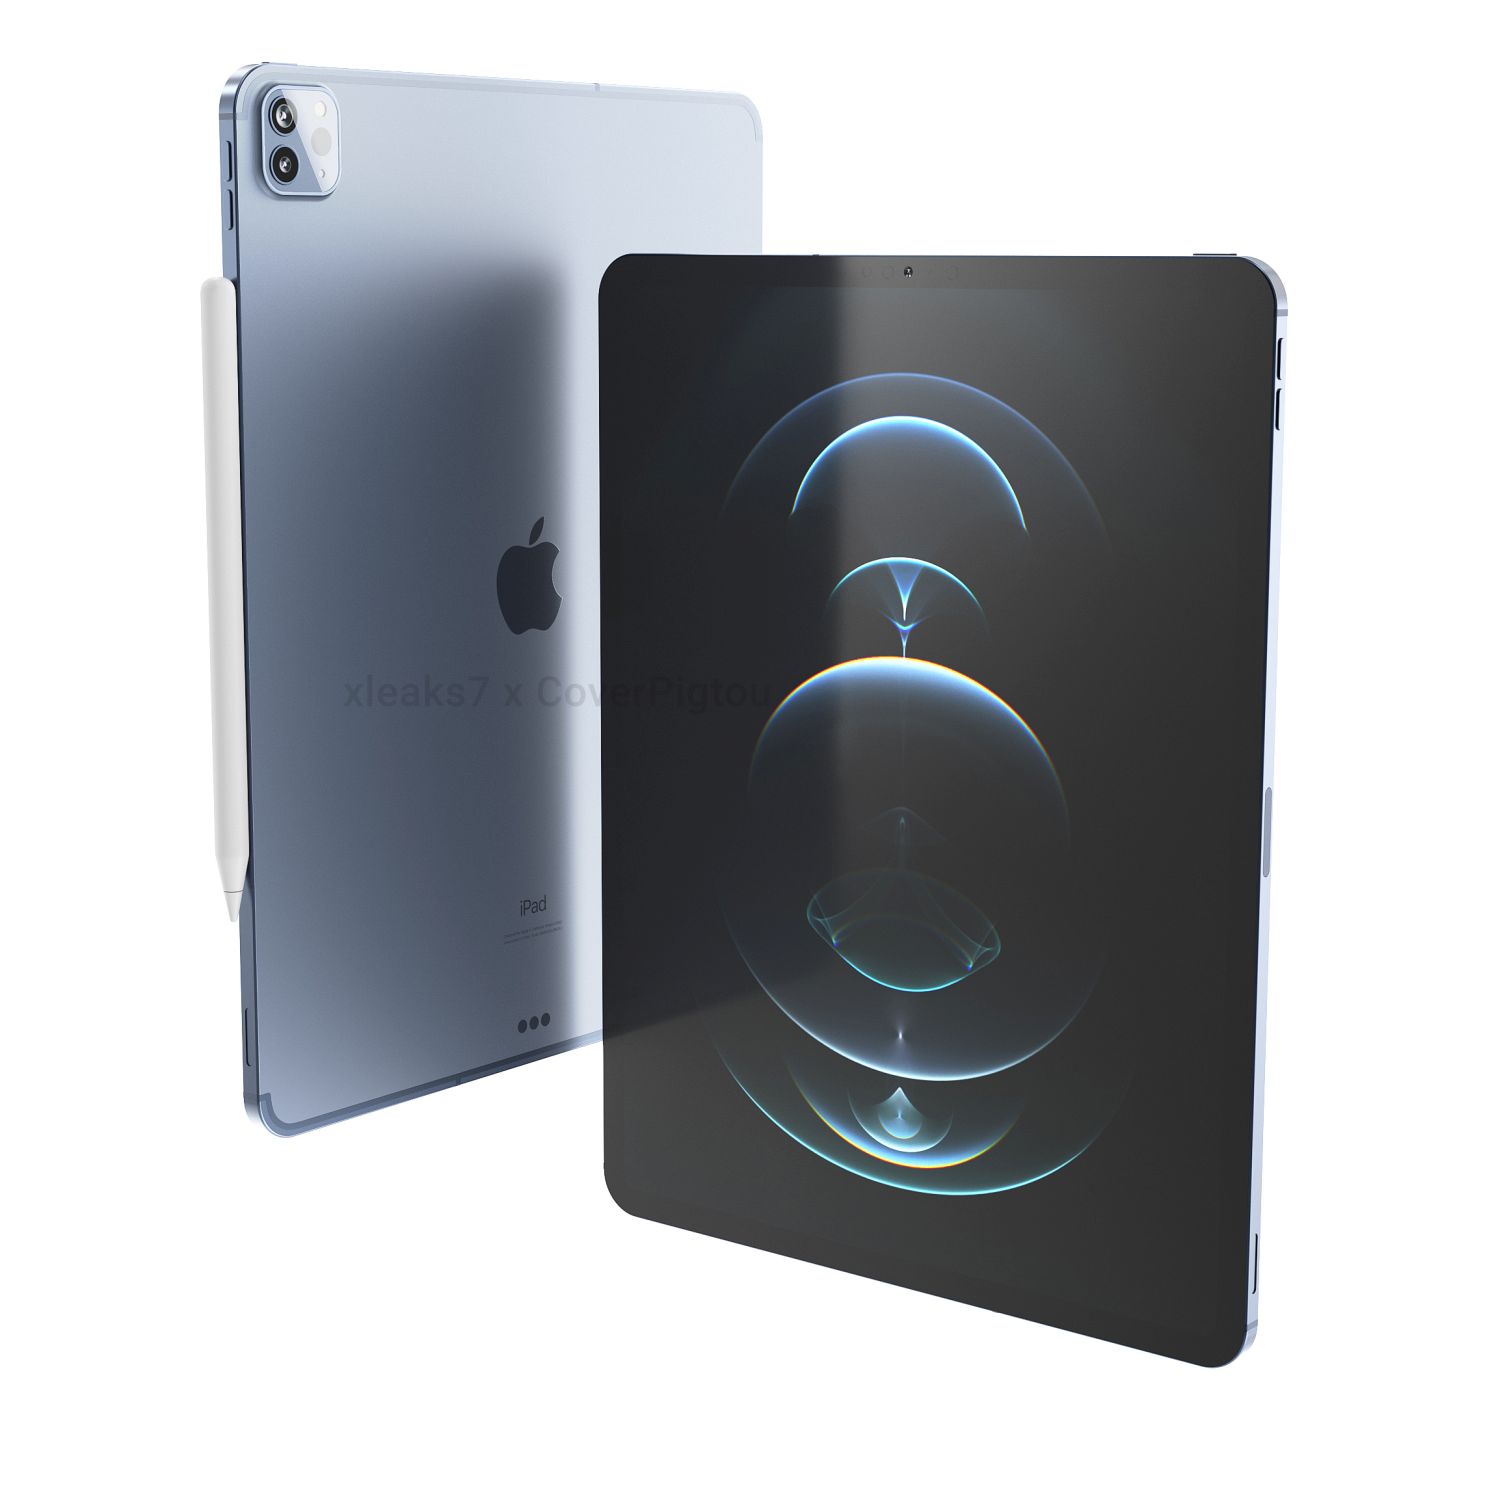 تبلت اپل مدل iPad Pro 12.9 inch 2021 wifi ظرفیت 256 گیگابایت - فروشگاه اهوازسنتر